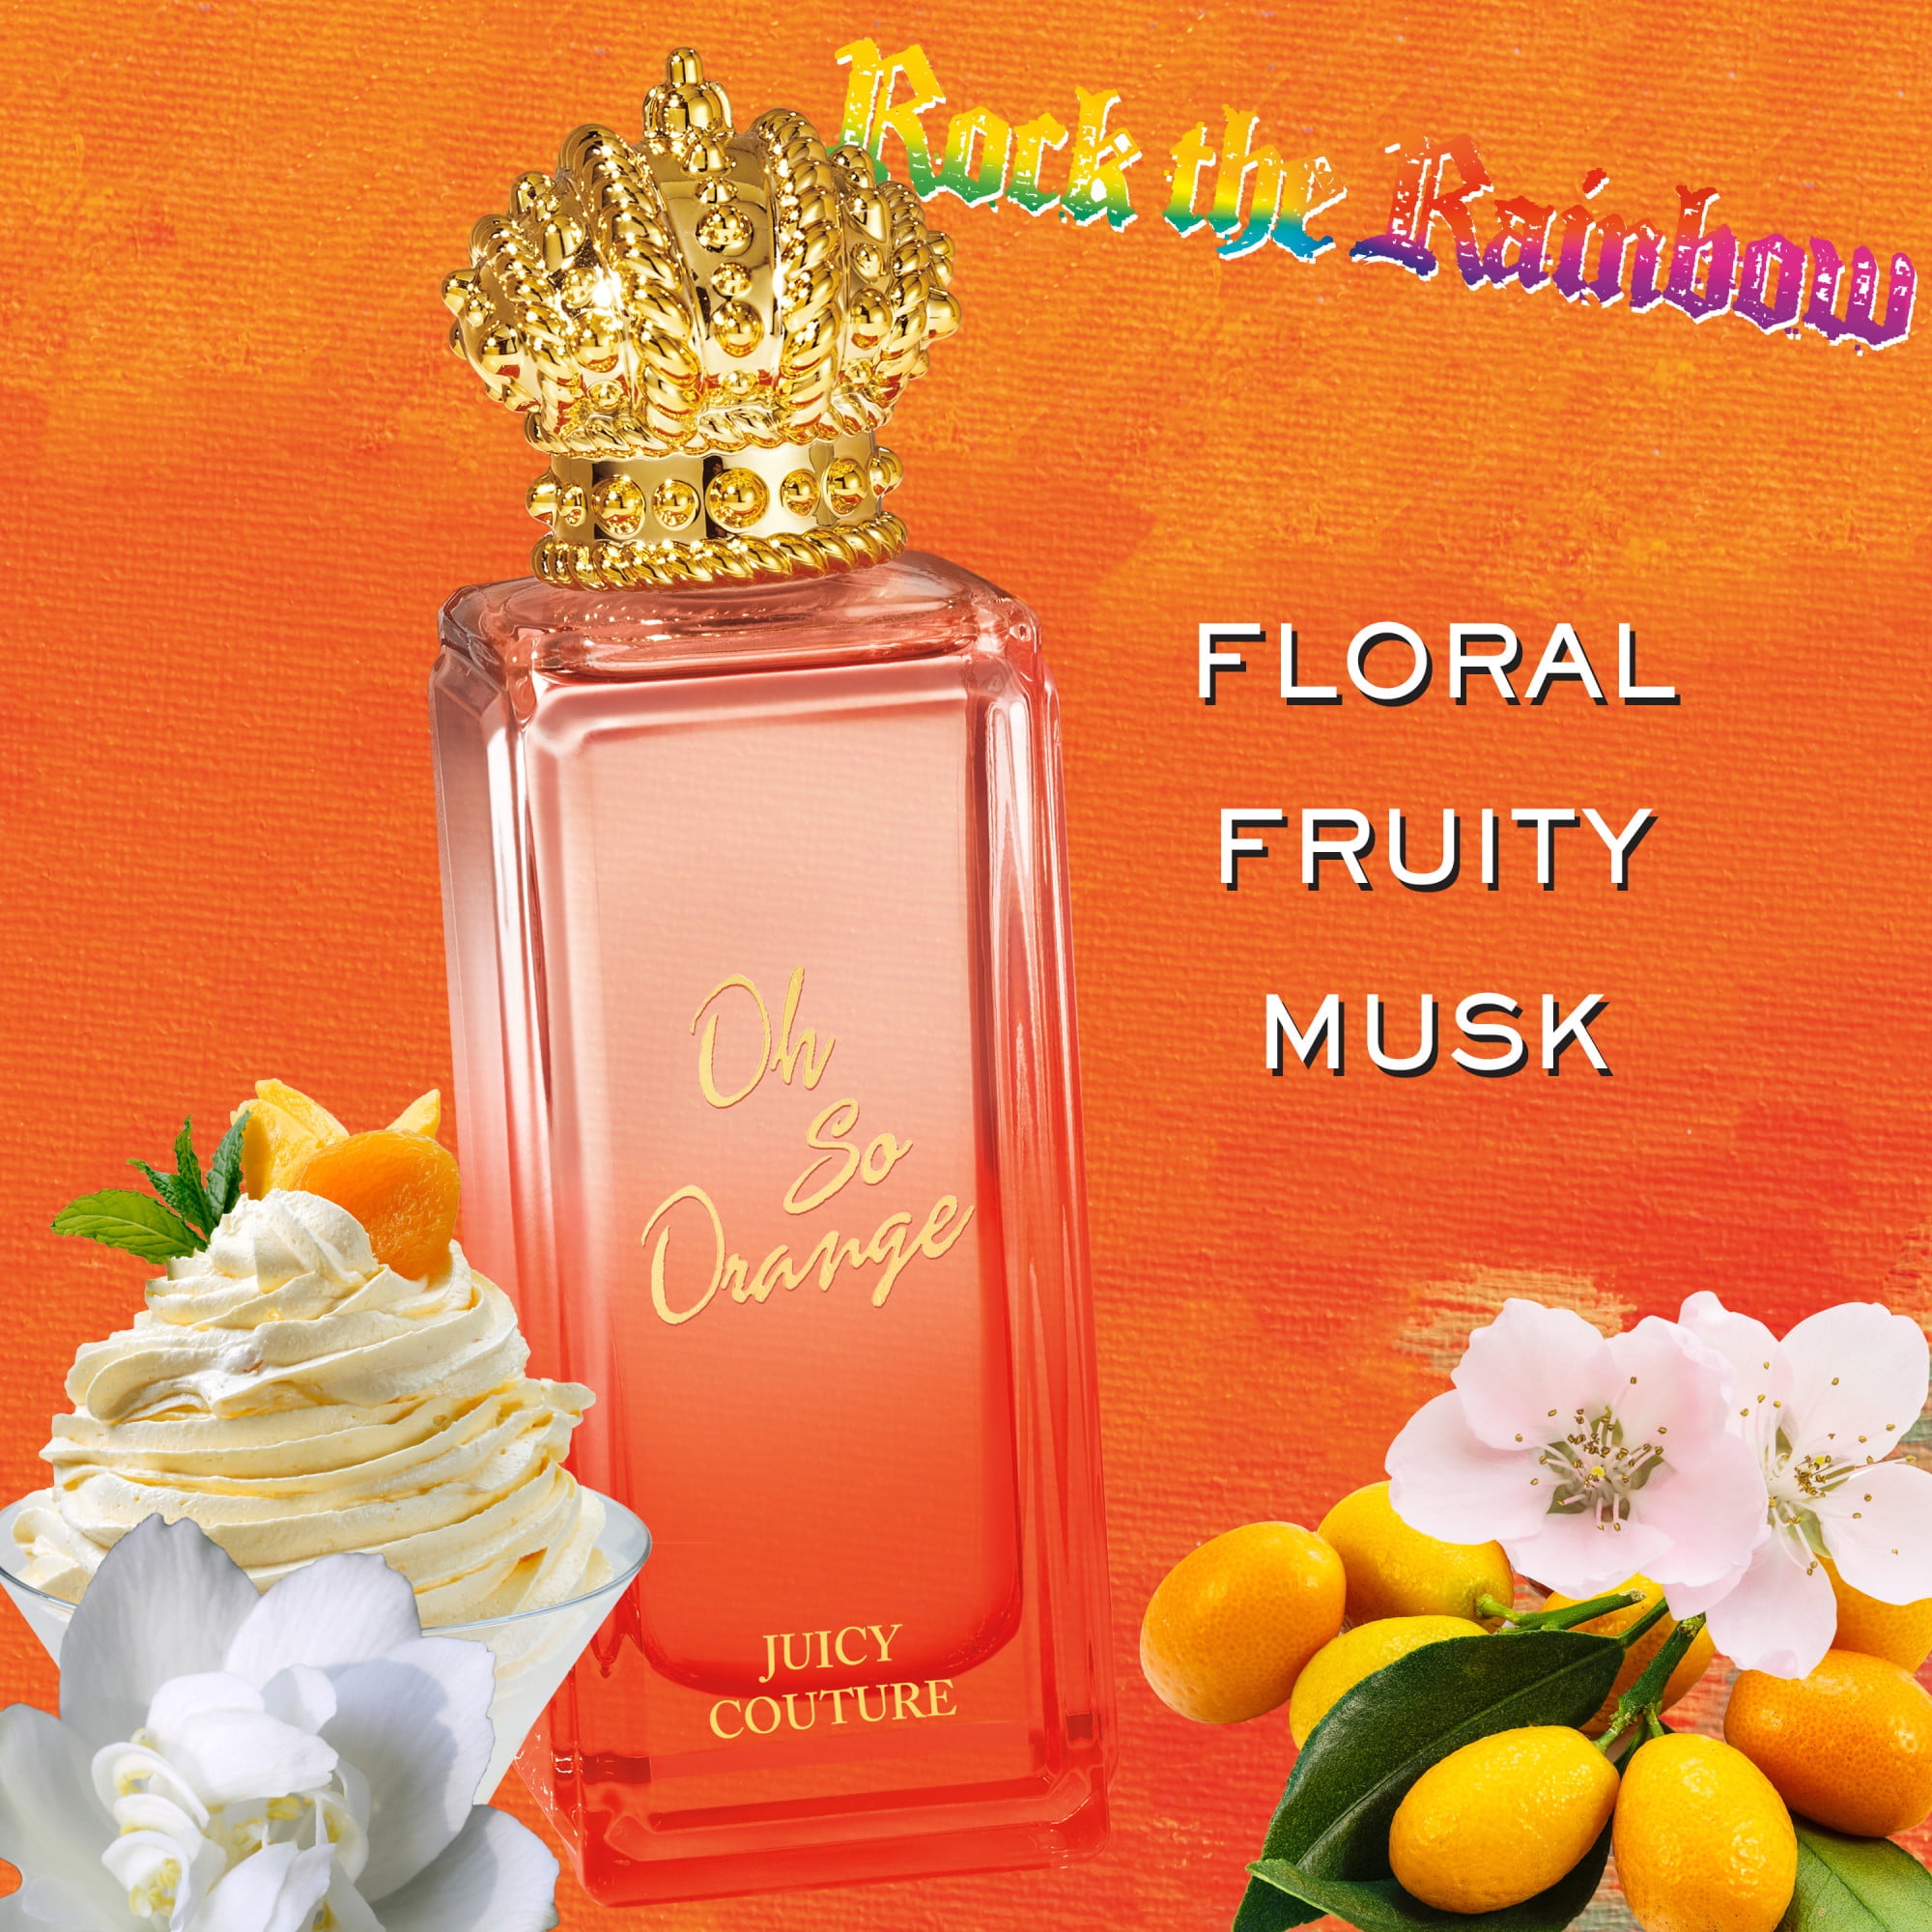 Juicy Couture Oh So Orange Eau De Toilette, Perfume for Women, 2.5 Oz 